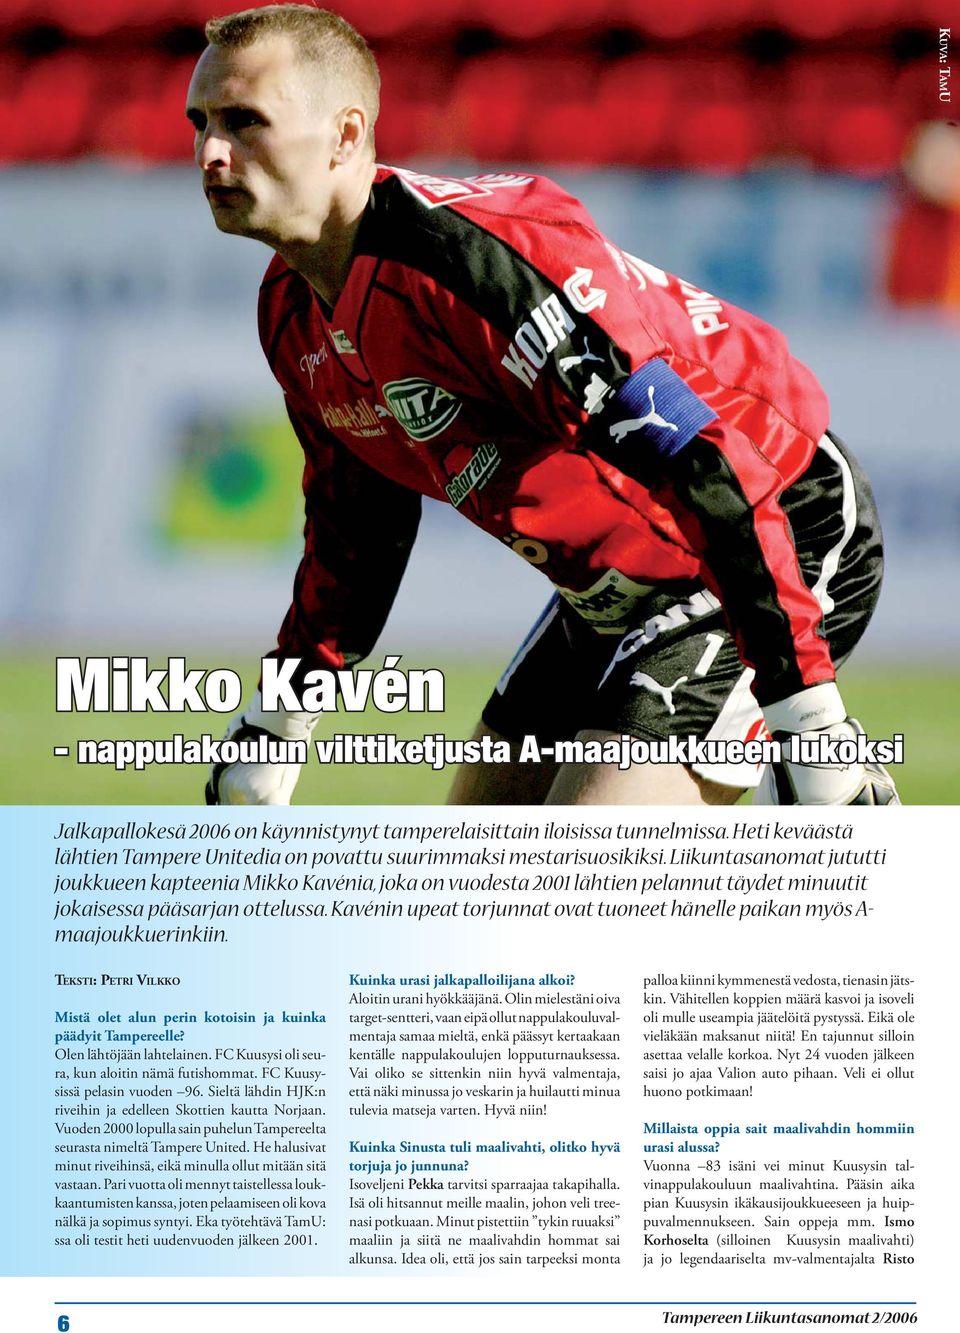 Liikuntasanomat jututti joukkueen kapteenia Mikko Kavénia, joka on vuodesta 2001 lähtien pelannut täydet minuutit jokaisessa pääsarjan ottelussa.